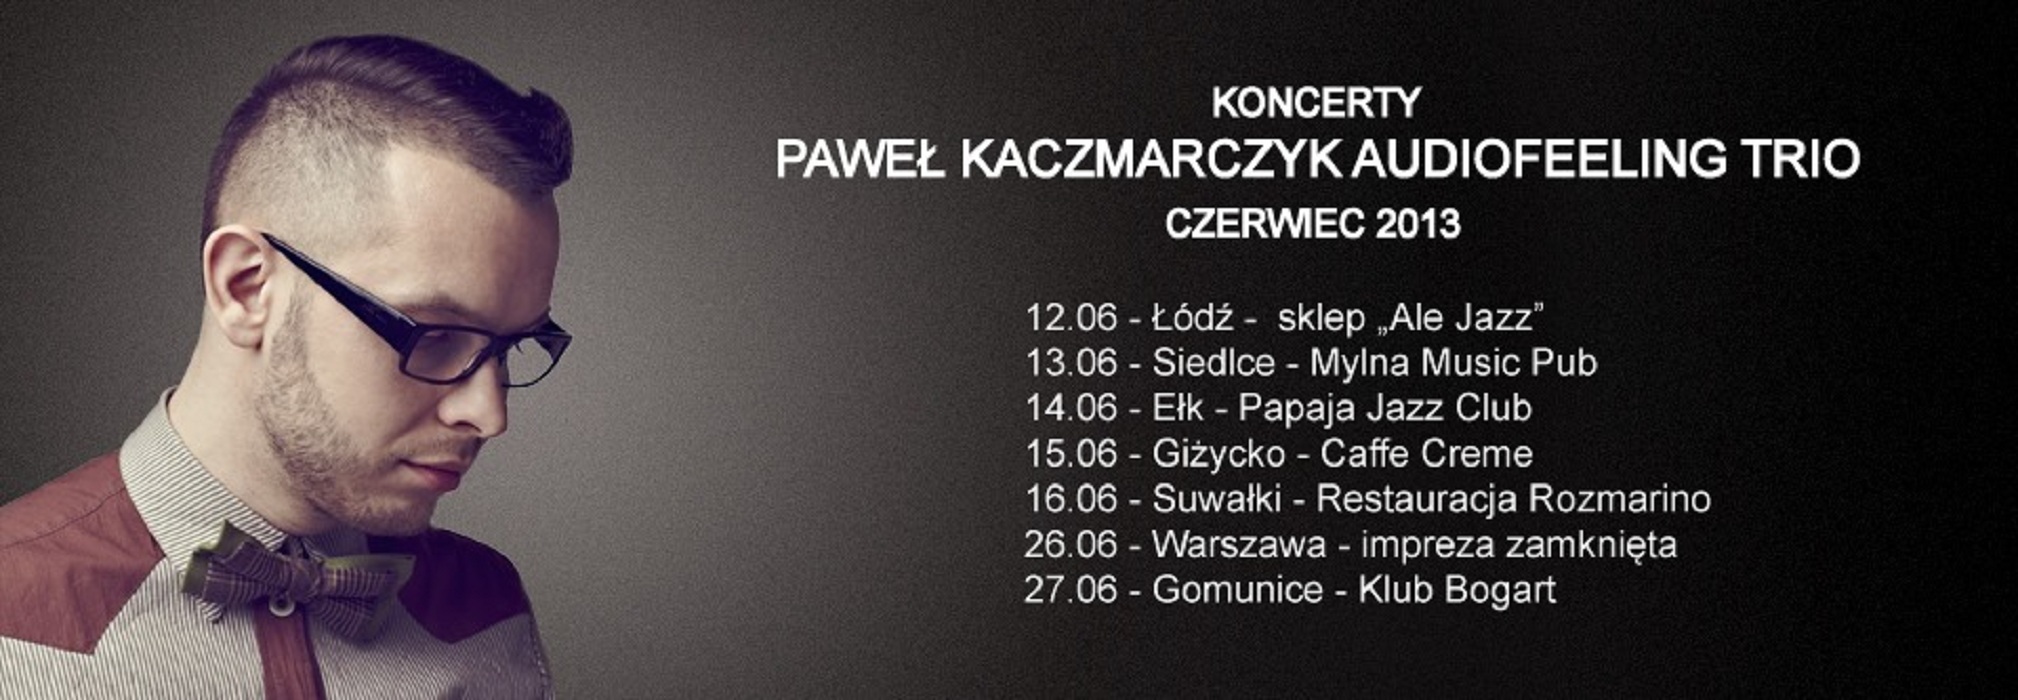 Paweł Kaczmarczyk Audiofeeling Trio, koncerty (źródło: mat. prasowe)